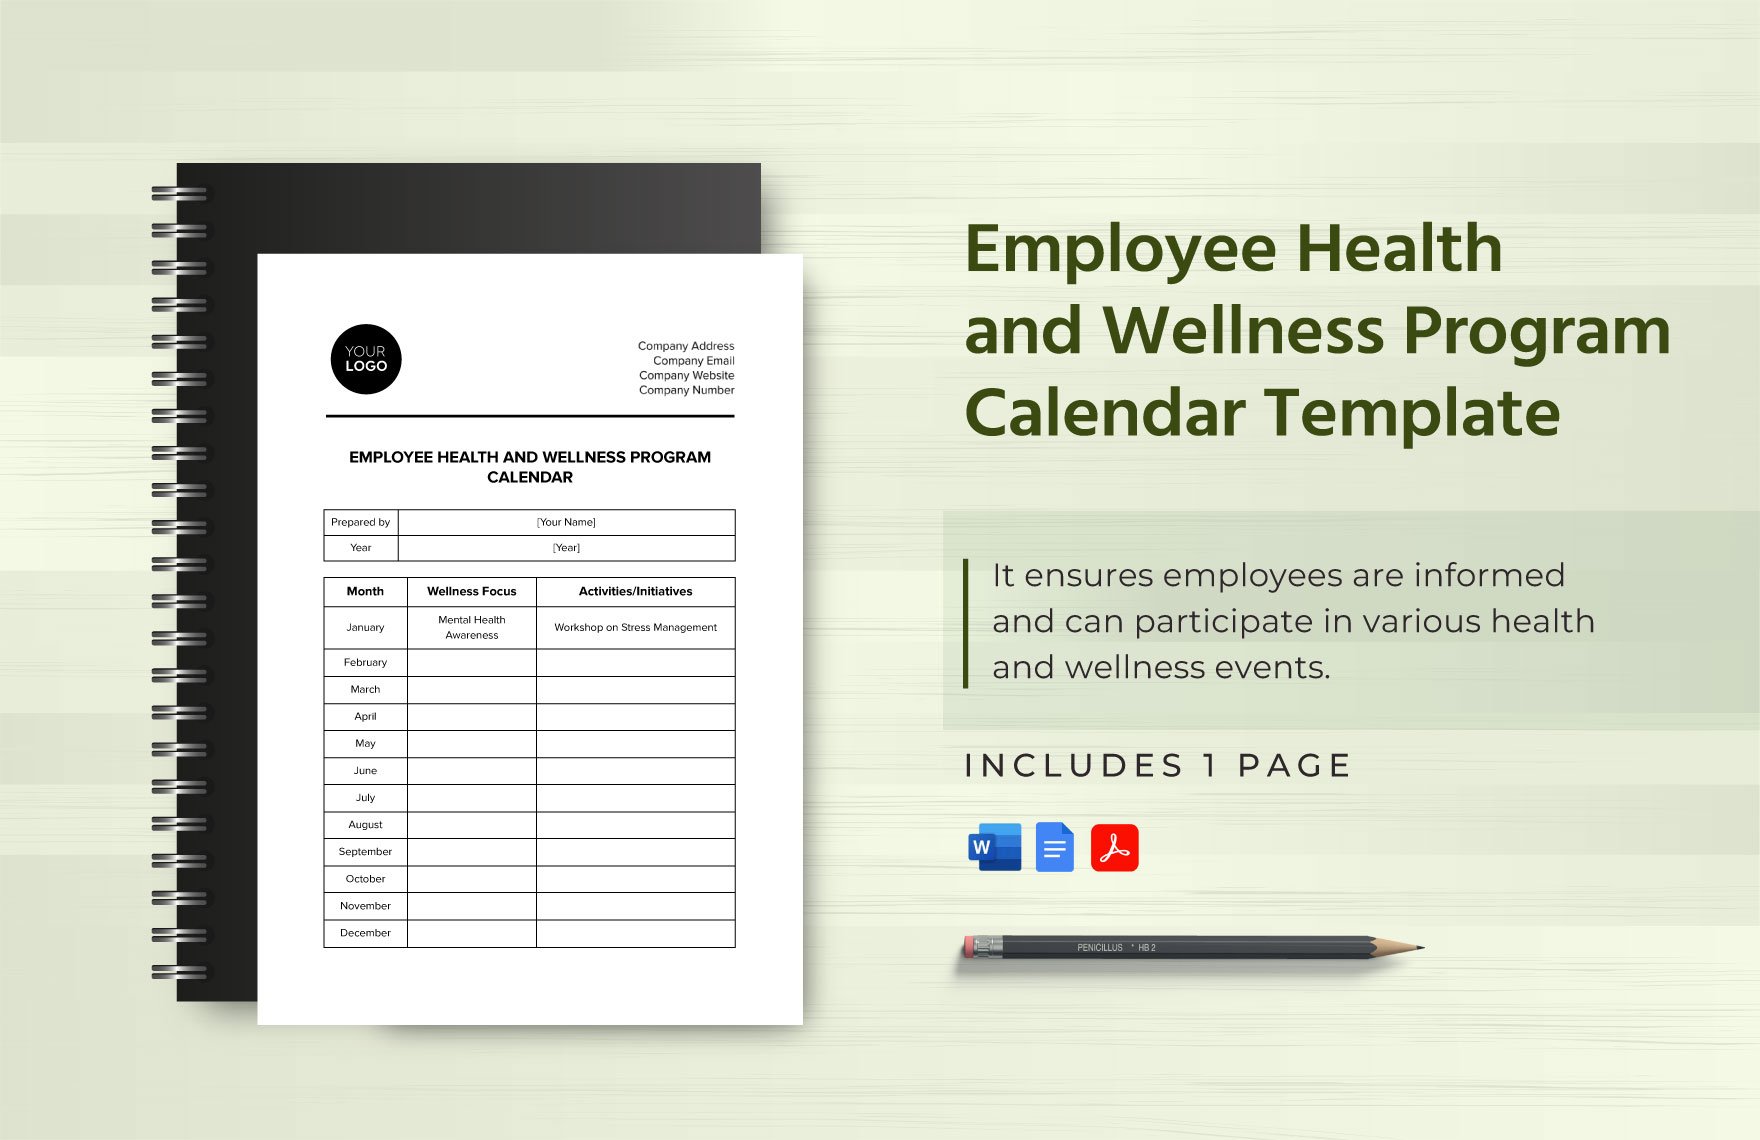 Employee Health and Wellness Program Calendar Template